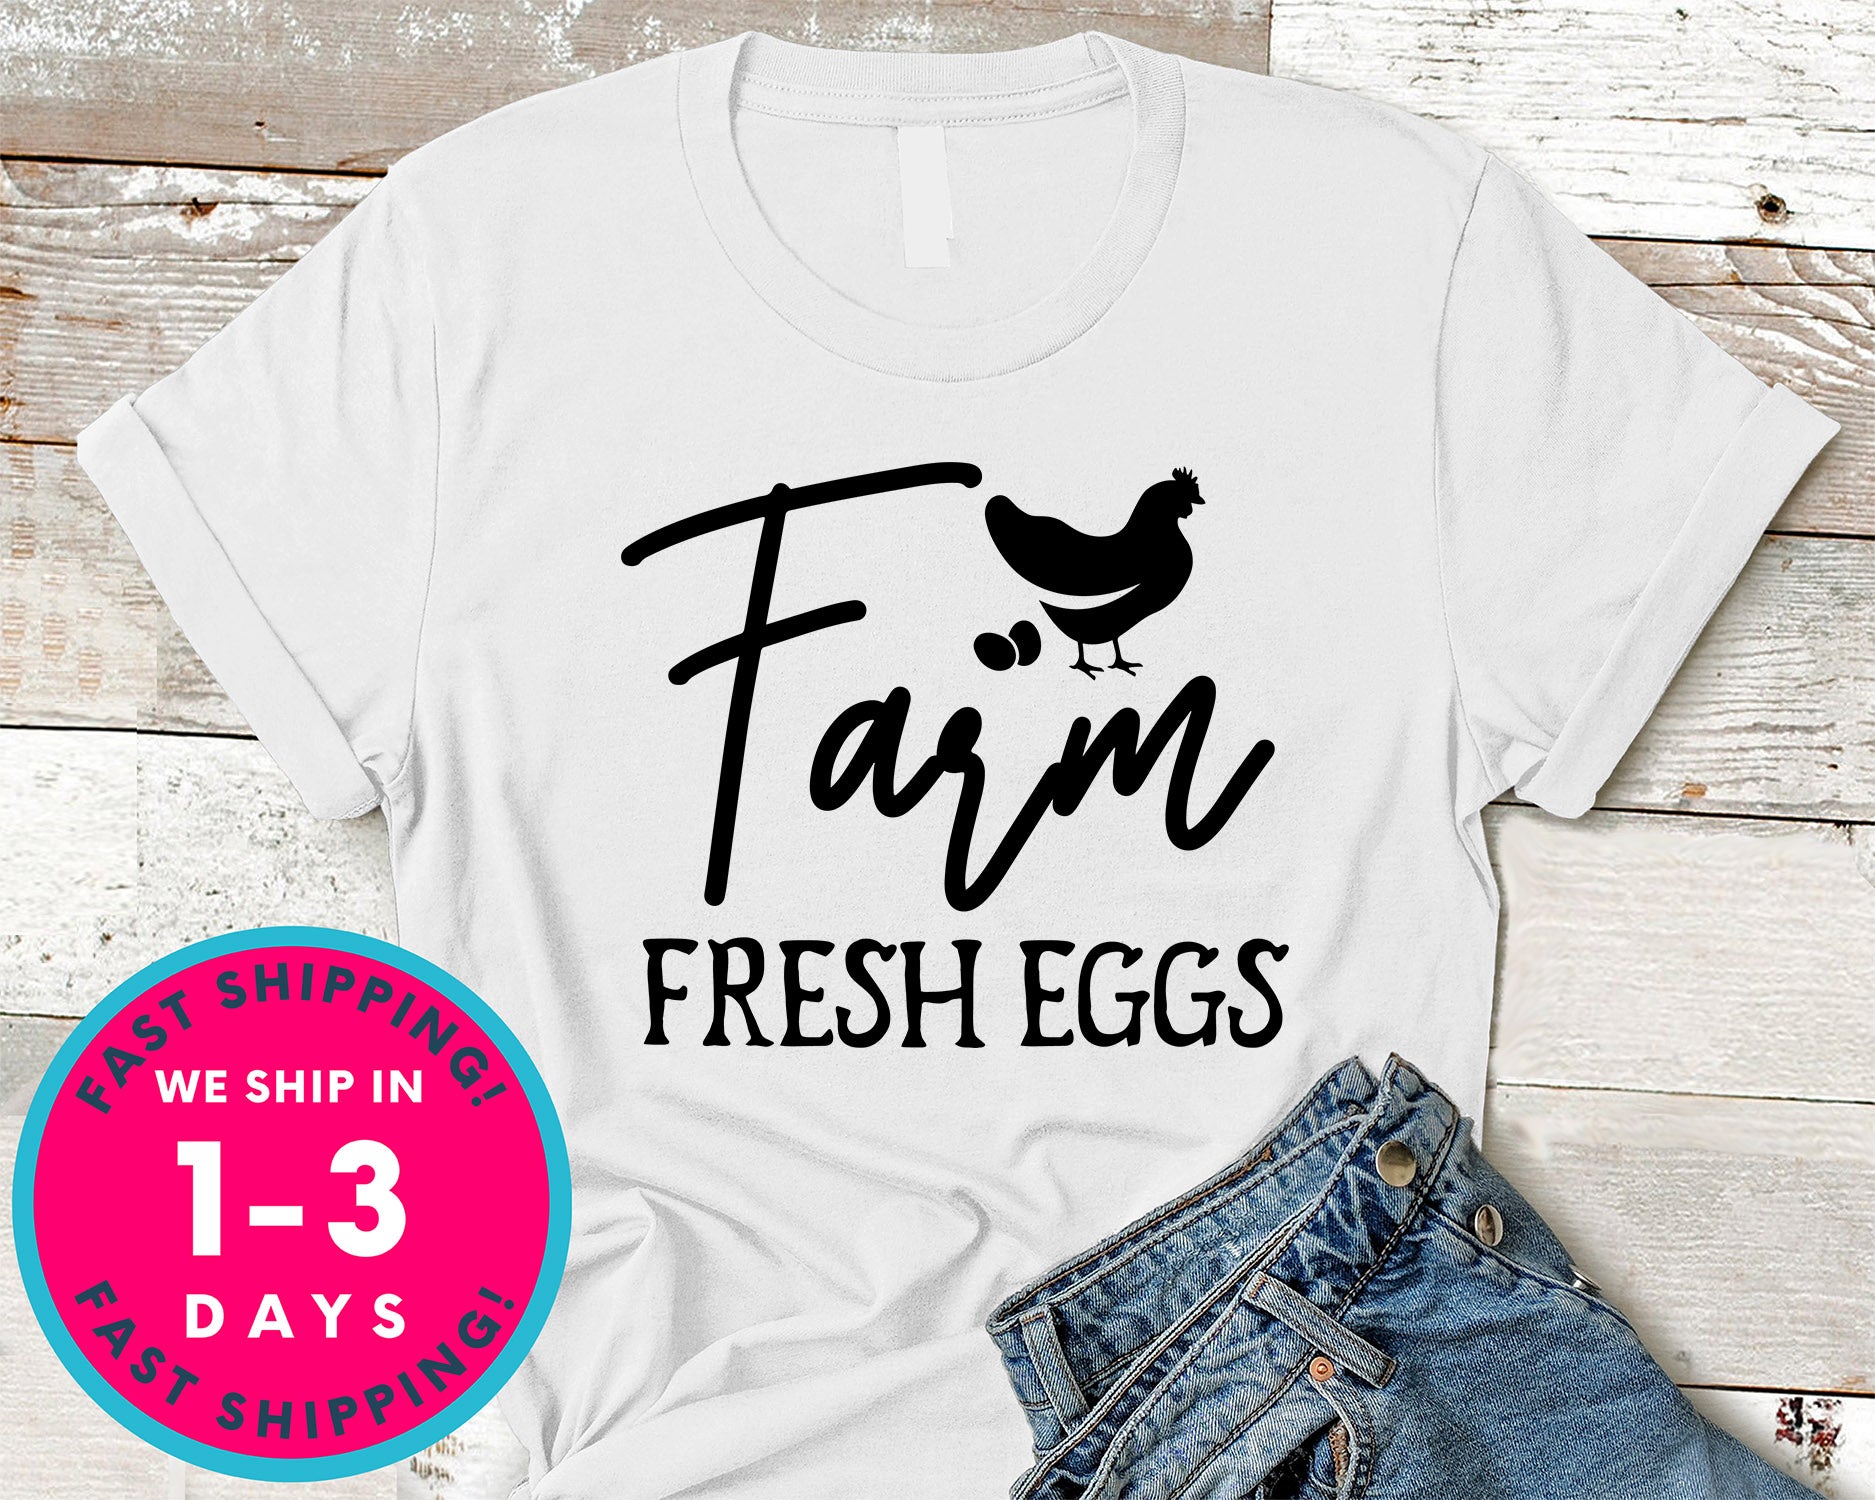 Farm Fresh Eggs Design 2